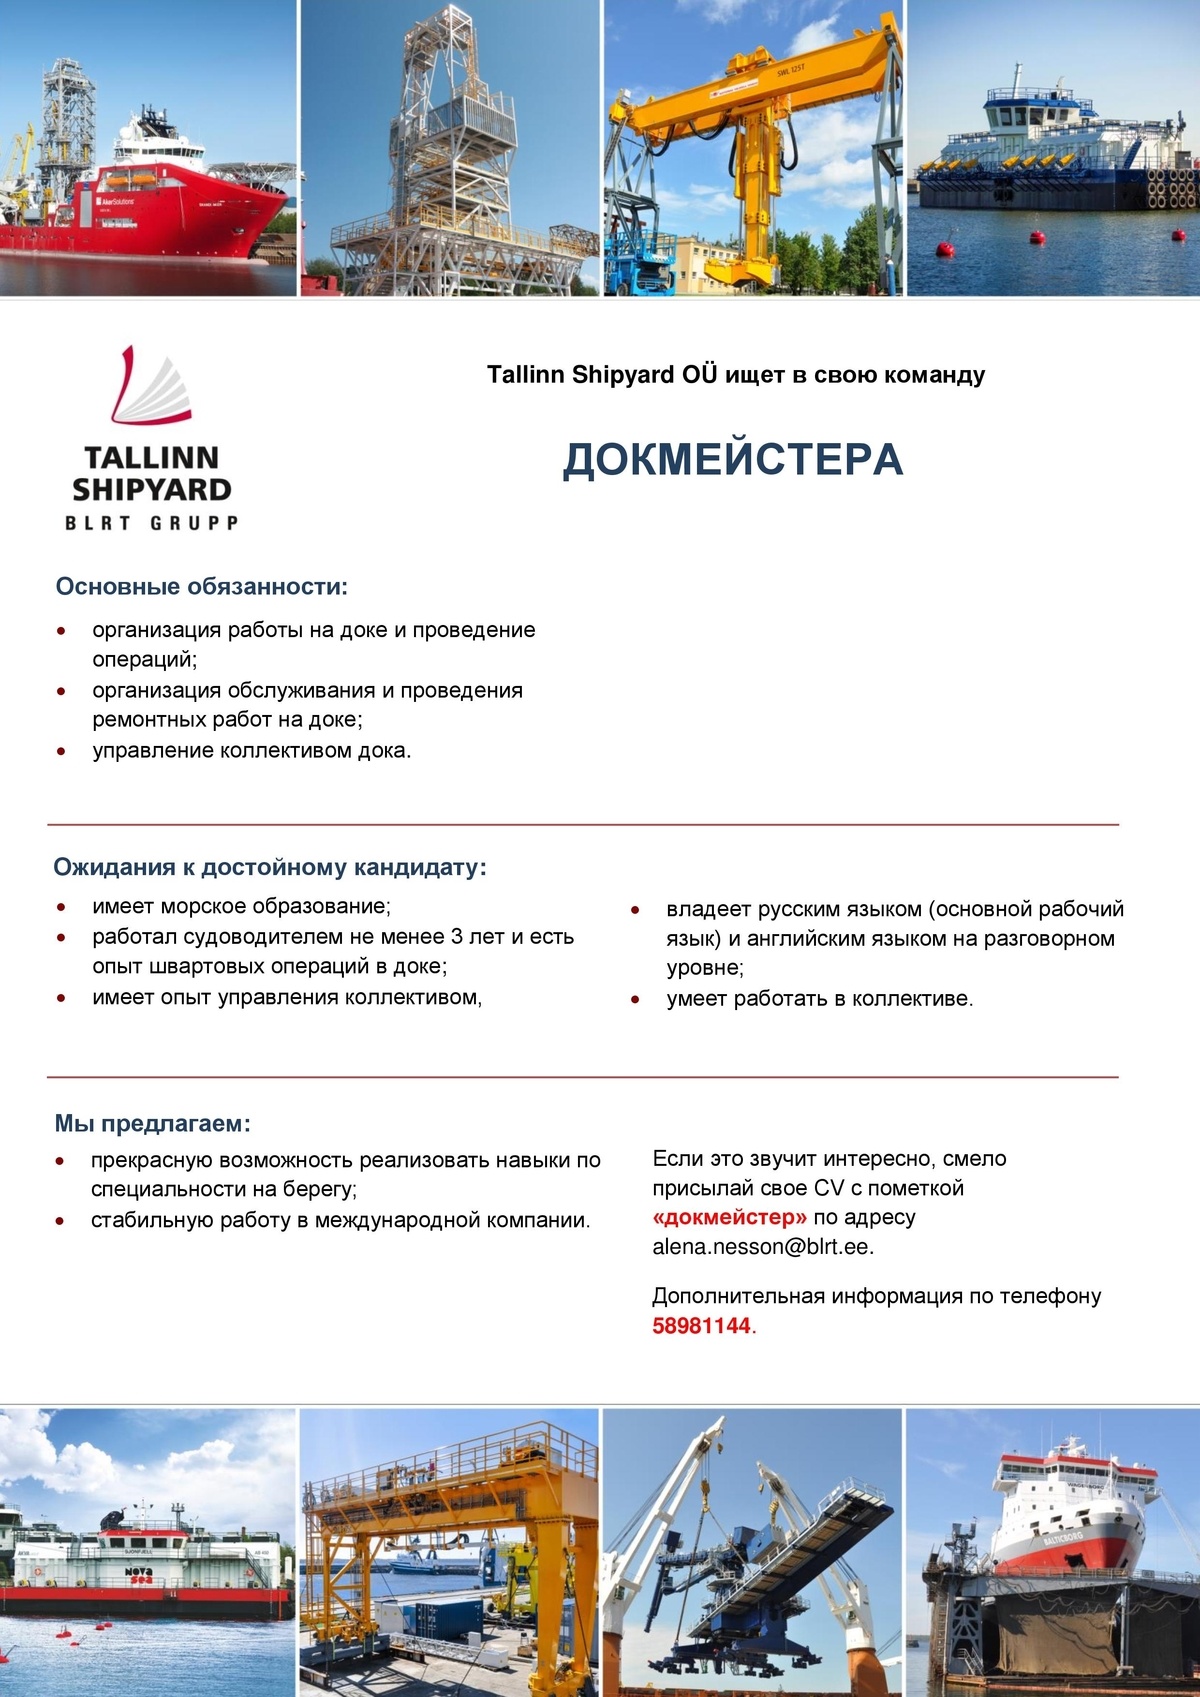 Tallinn Shipyard OÜ  ДОКМЕЙСТЕР